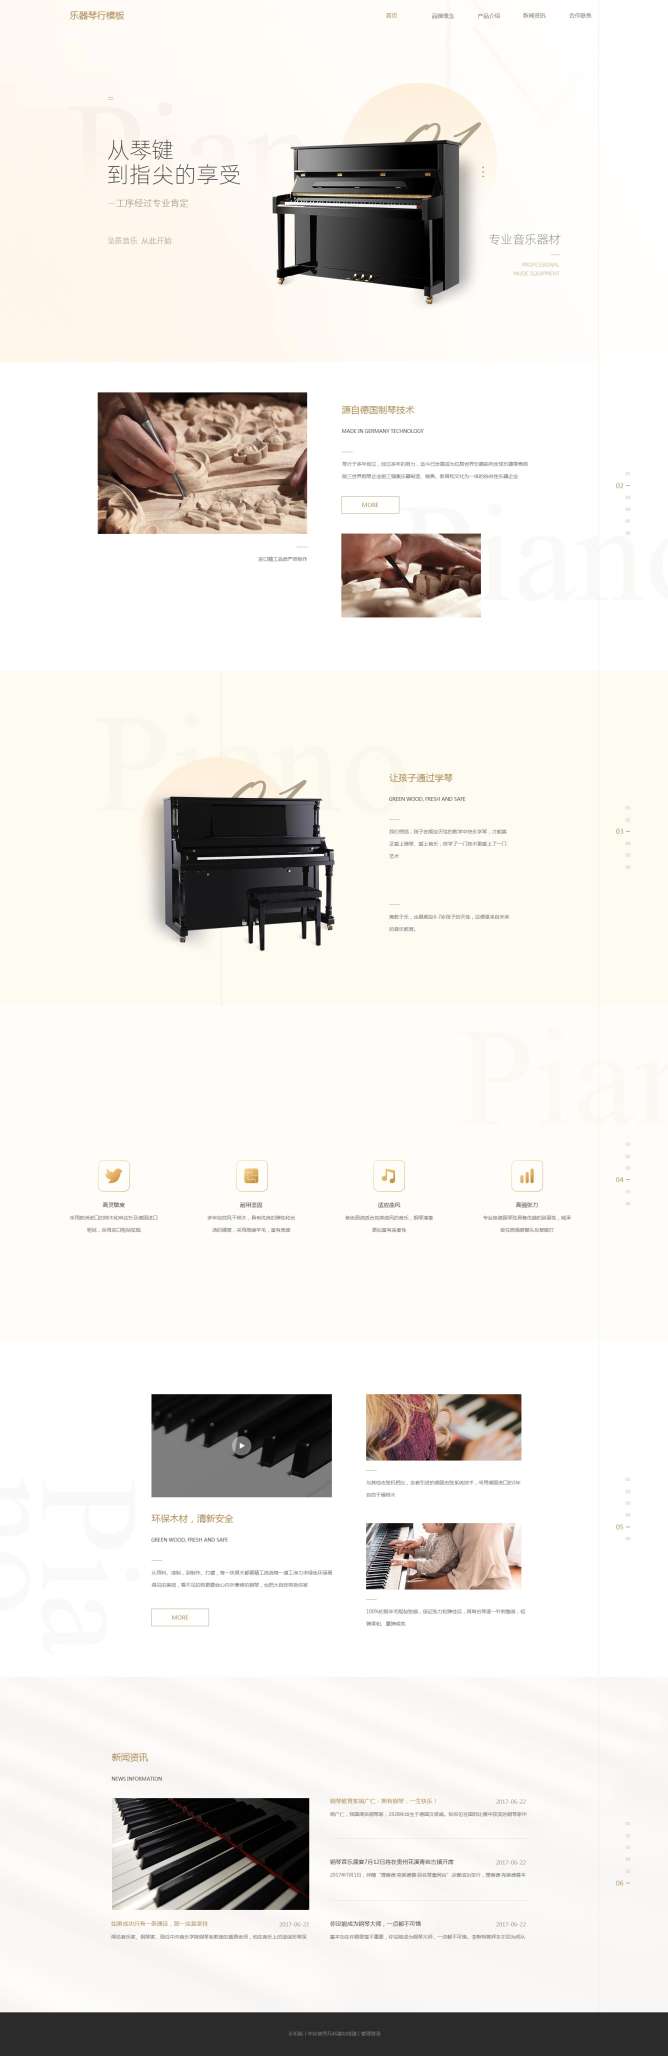 精选乐器琴行网站模板